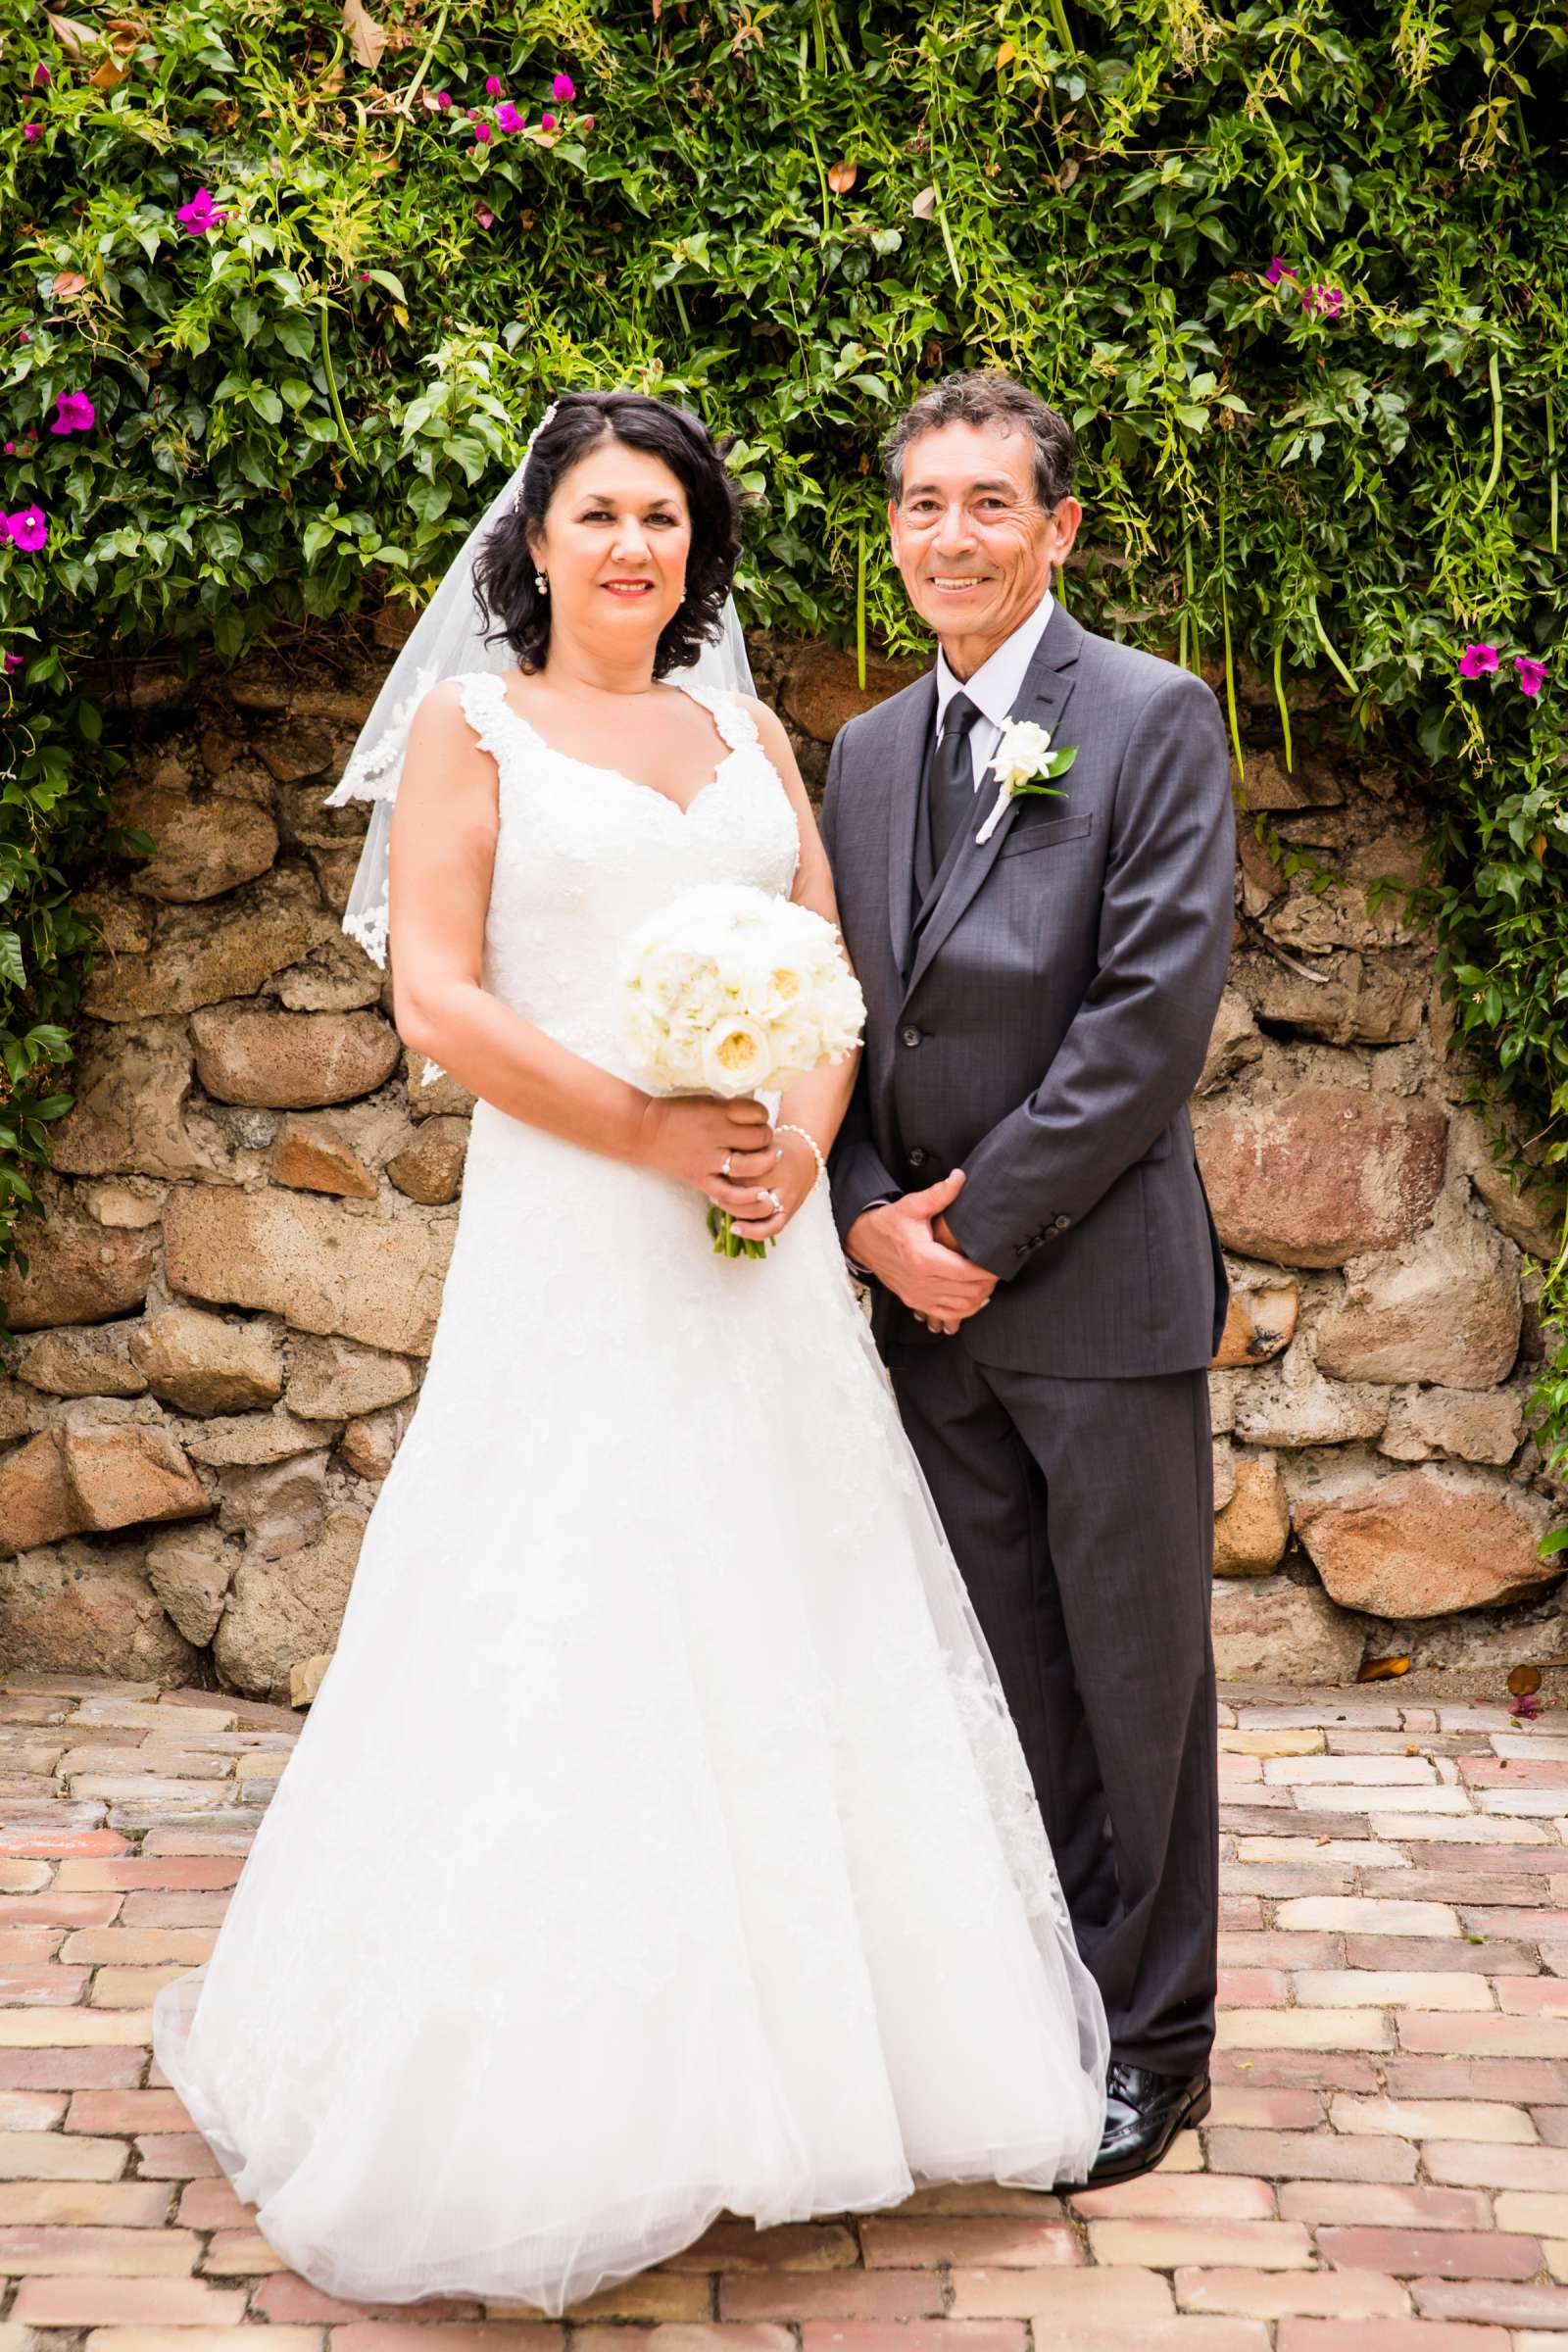 Rancho Buena Vista Adobe Wedding, Ellinor and Frank Wedding Photo #28 by True Photography